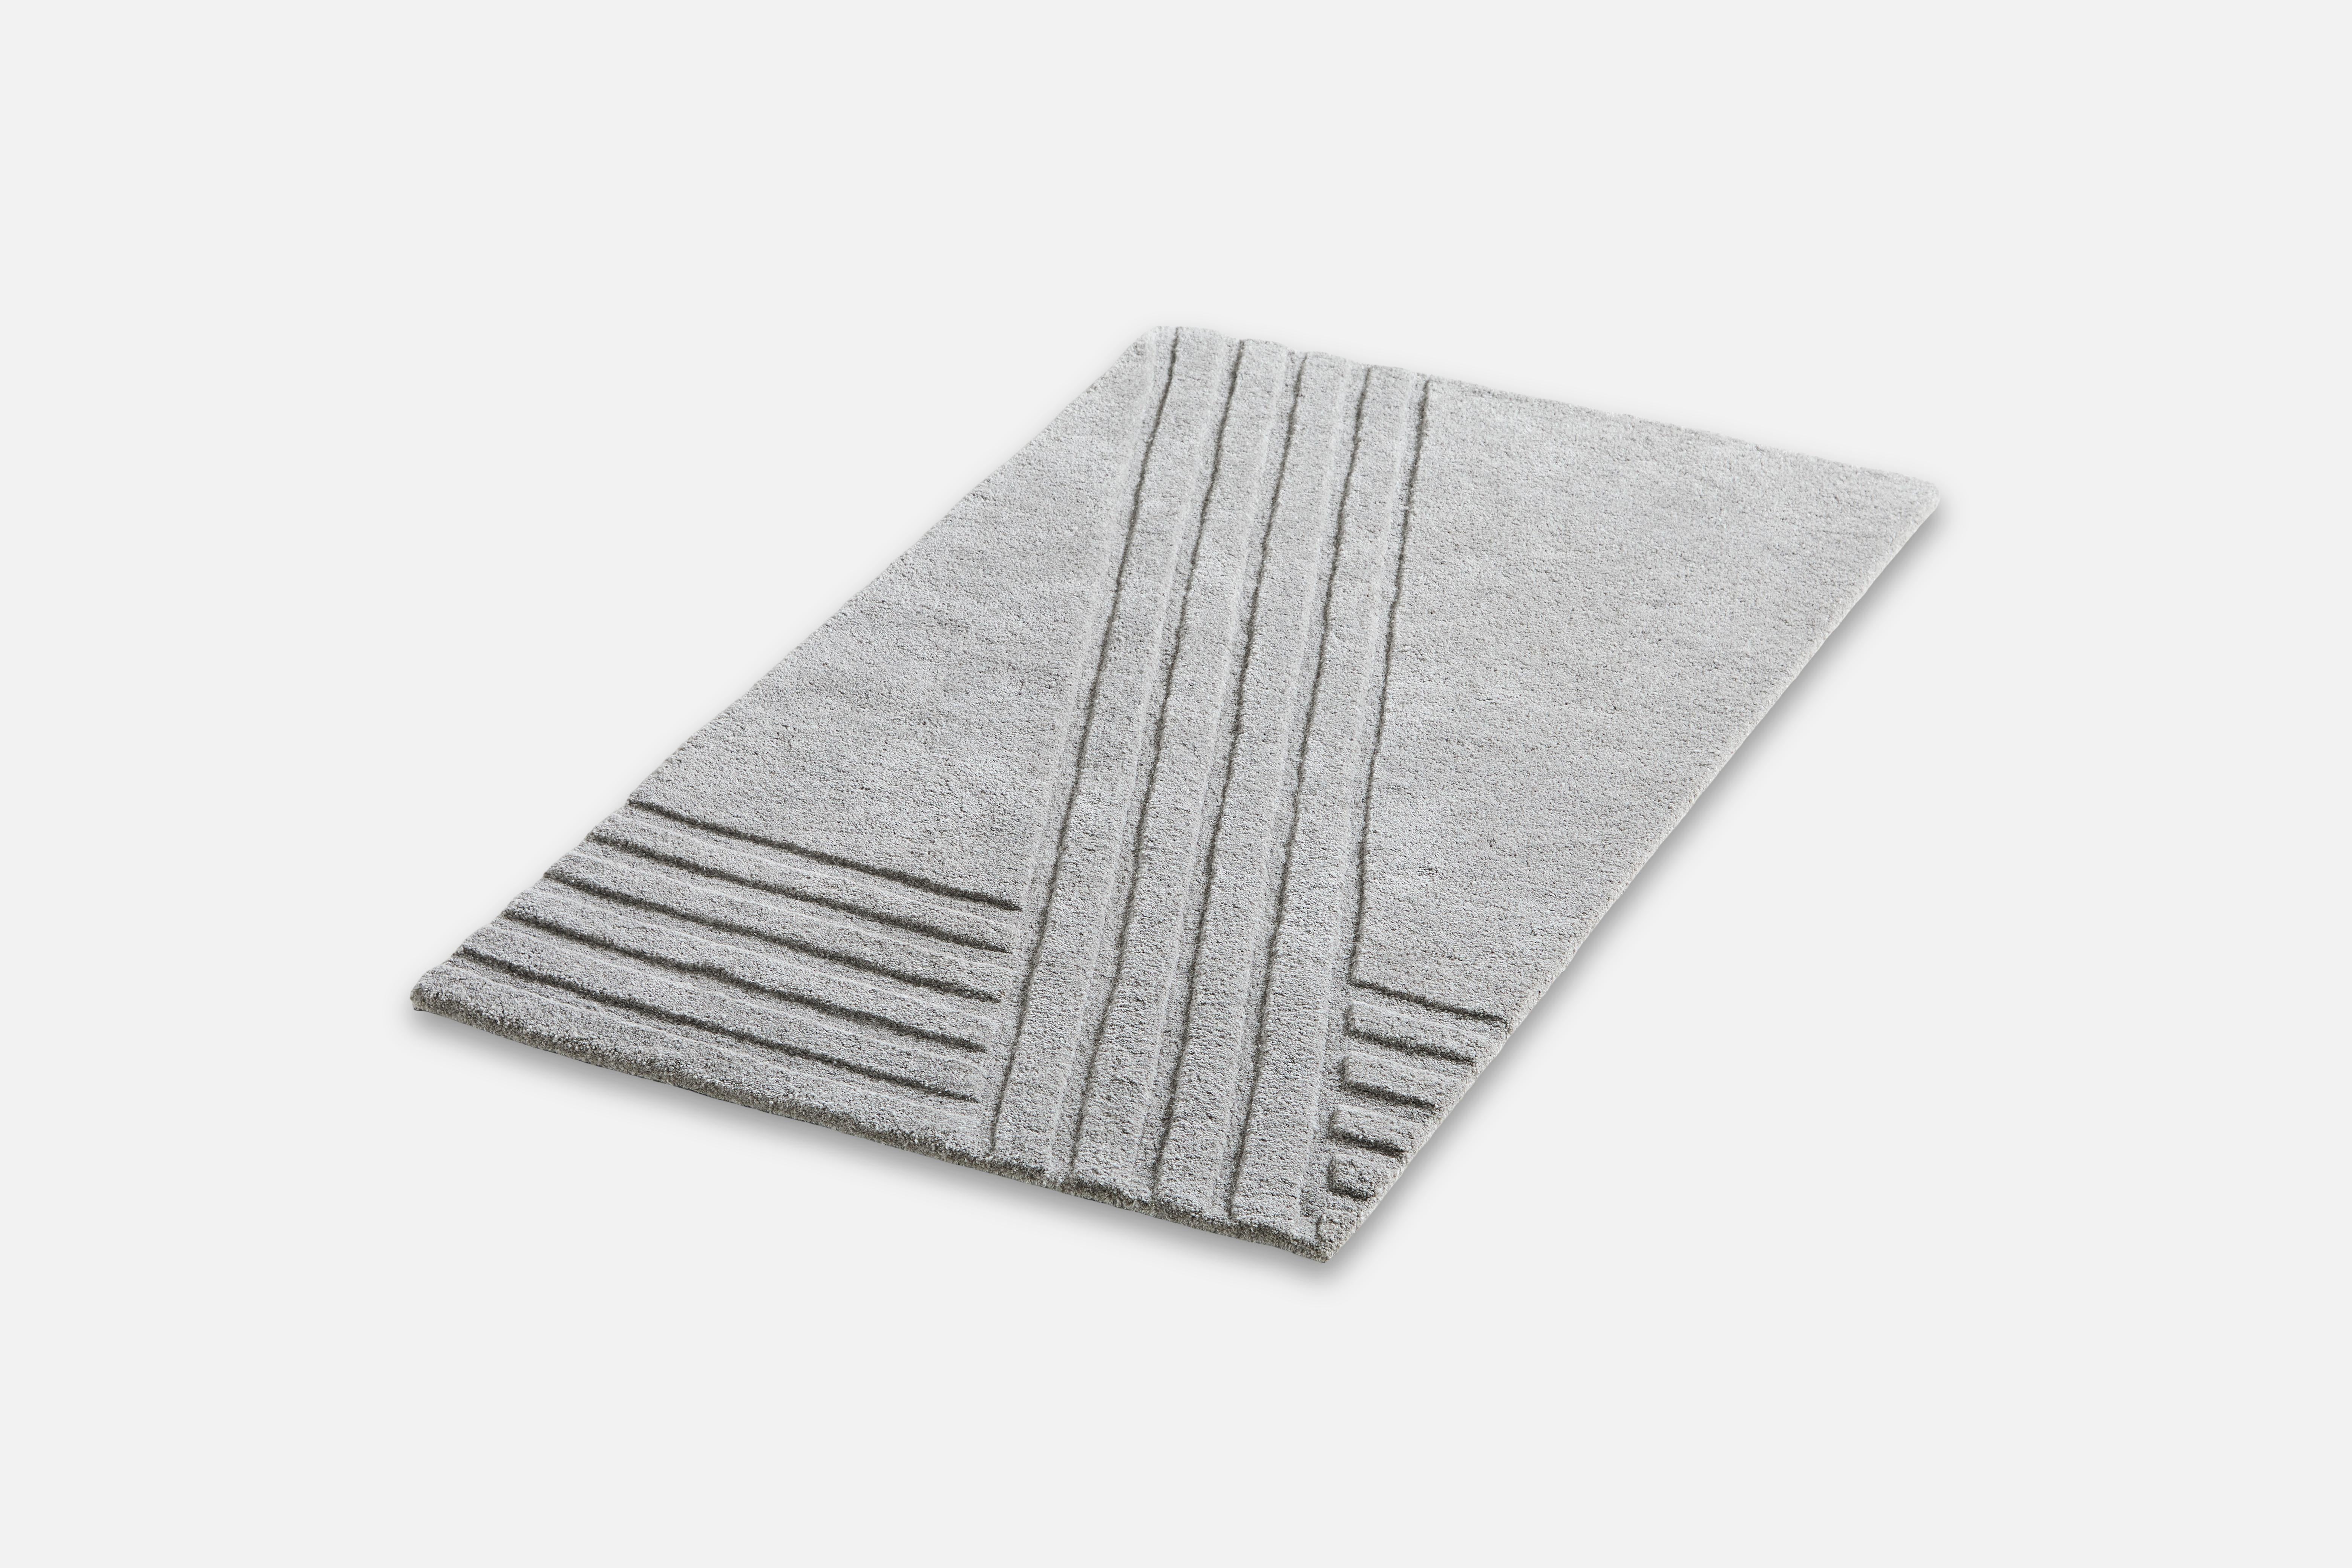 Grauer Kyoto-Teppich I von AD Miller
MATERIALIEN: 80% Wolle, 20% Baumwolle.
Abmessungen: B 90 x L 140 cm
Erhältlich in Grau oder Weiß.

Der handgetuftete Wollteppich Kyoto ist von dem charakteristischen Muster der traditionellen japanischen